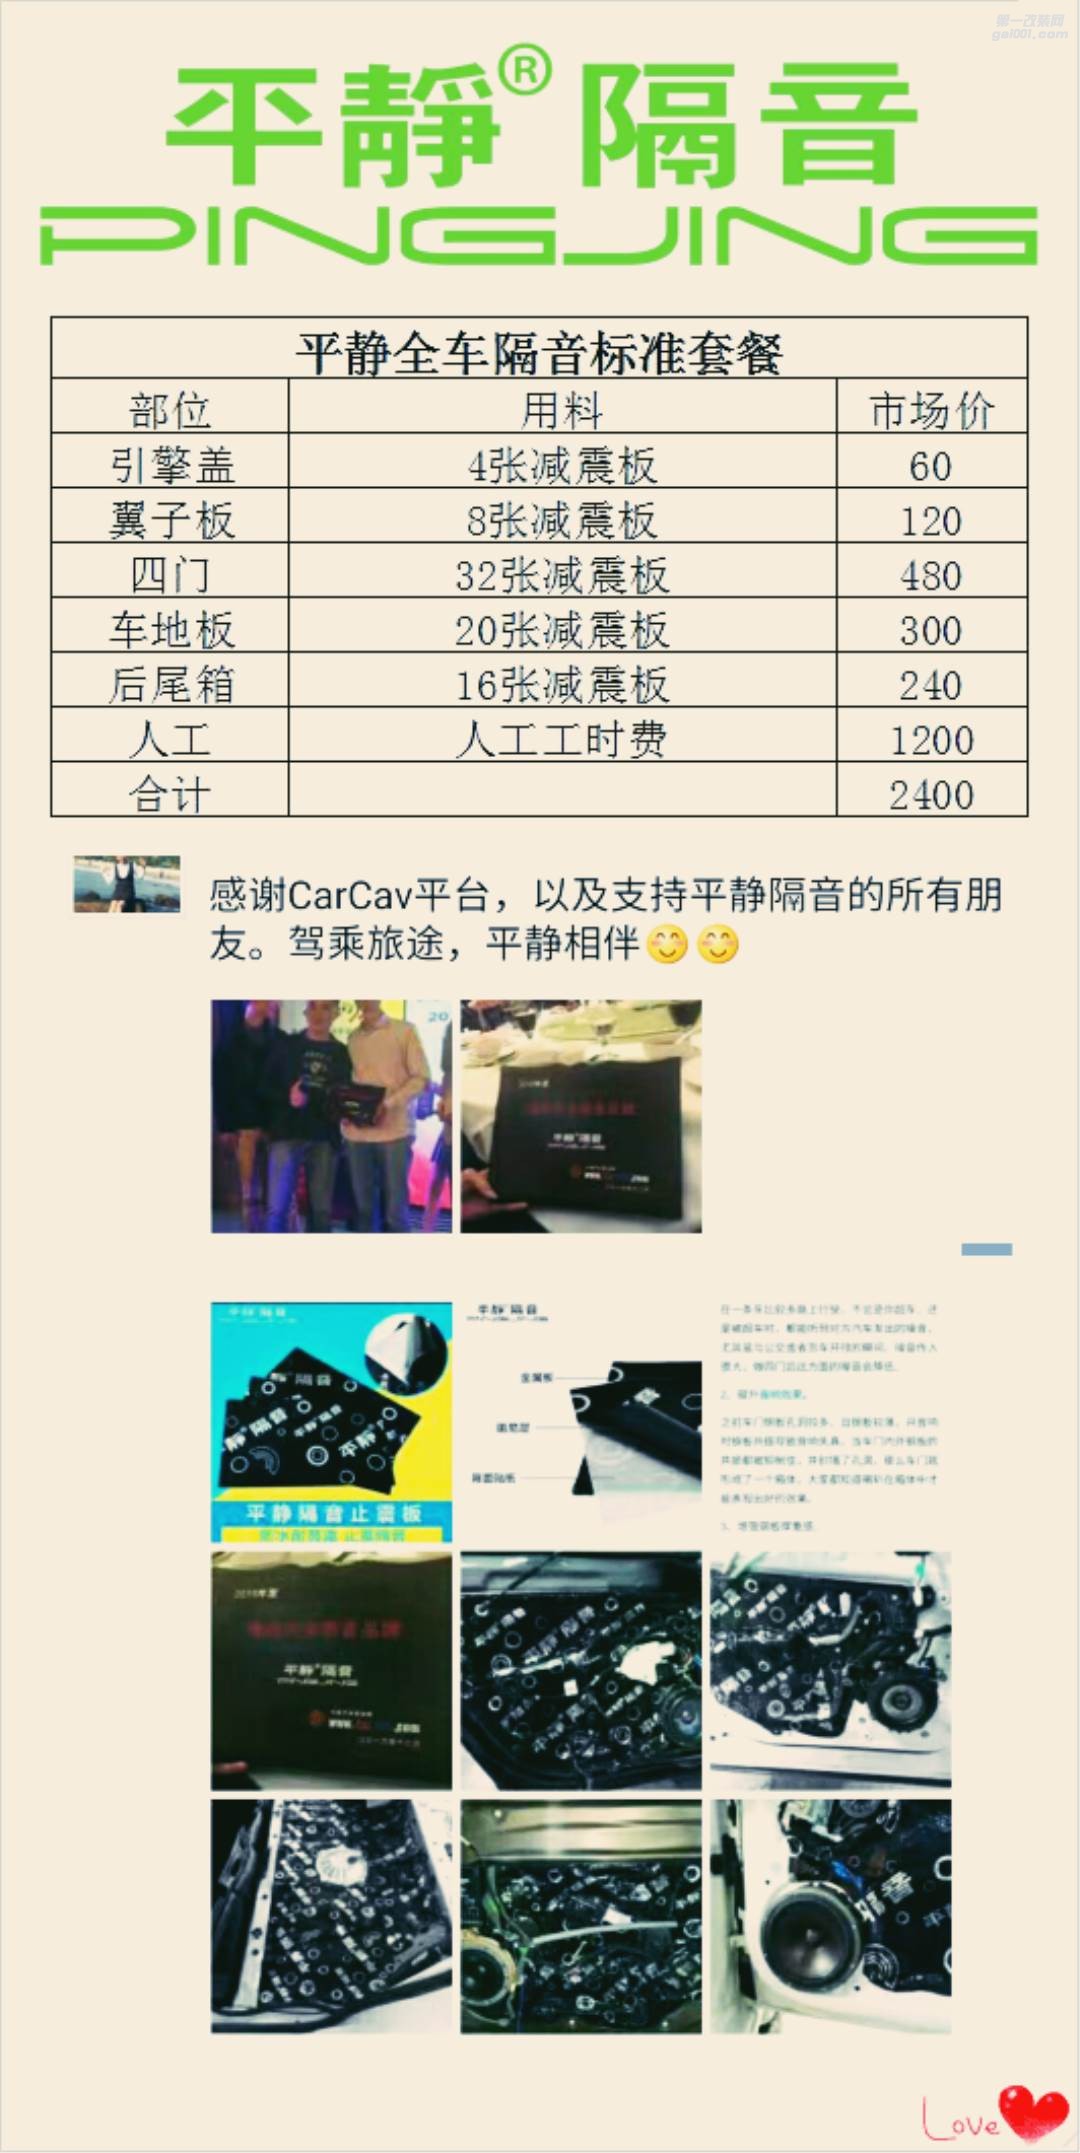 【优惠促销】抚州十一汽车改装店汽车音响大型促销活动